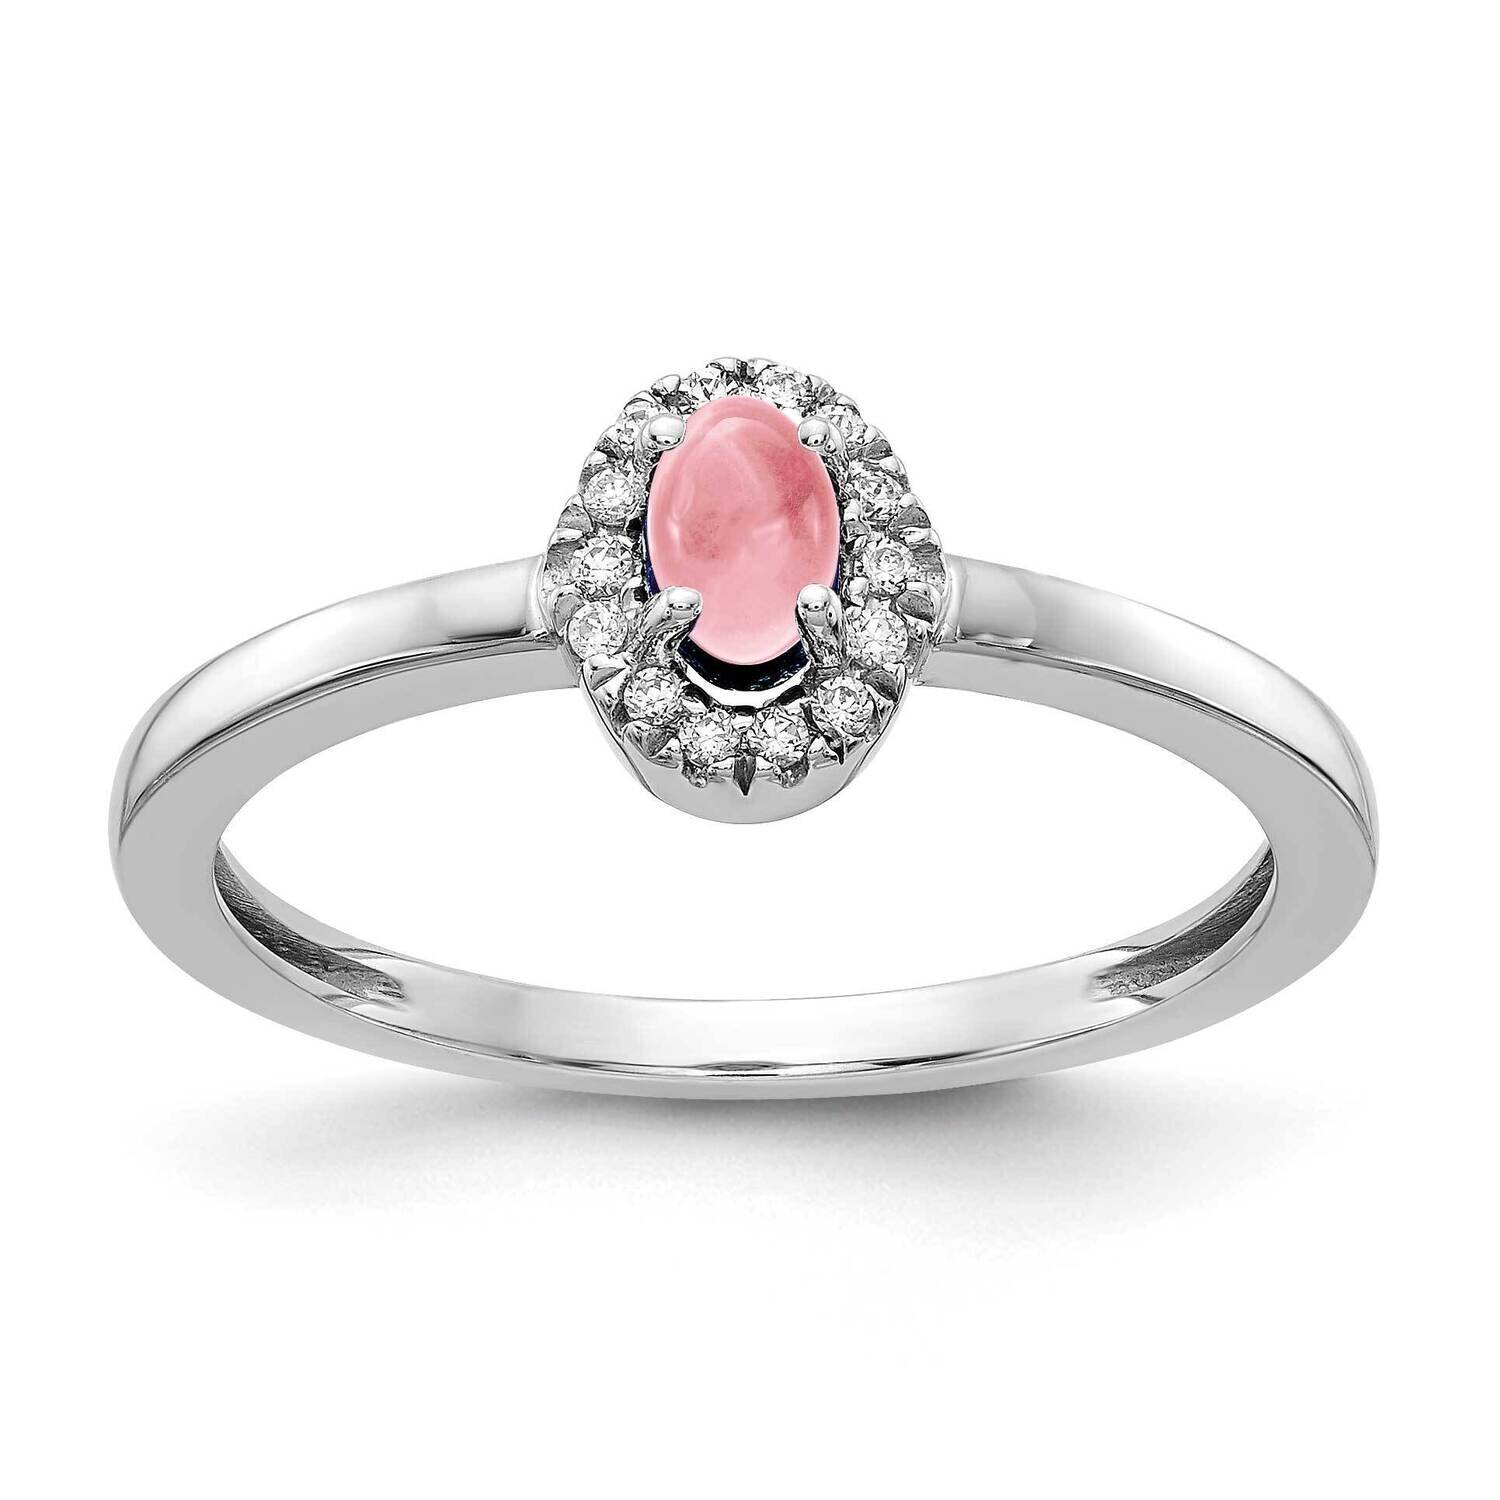 Cabochon Pink Tourmaline Ring 14k White Gold Diamond RM4035-PT-025-WA